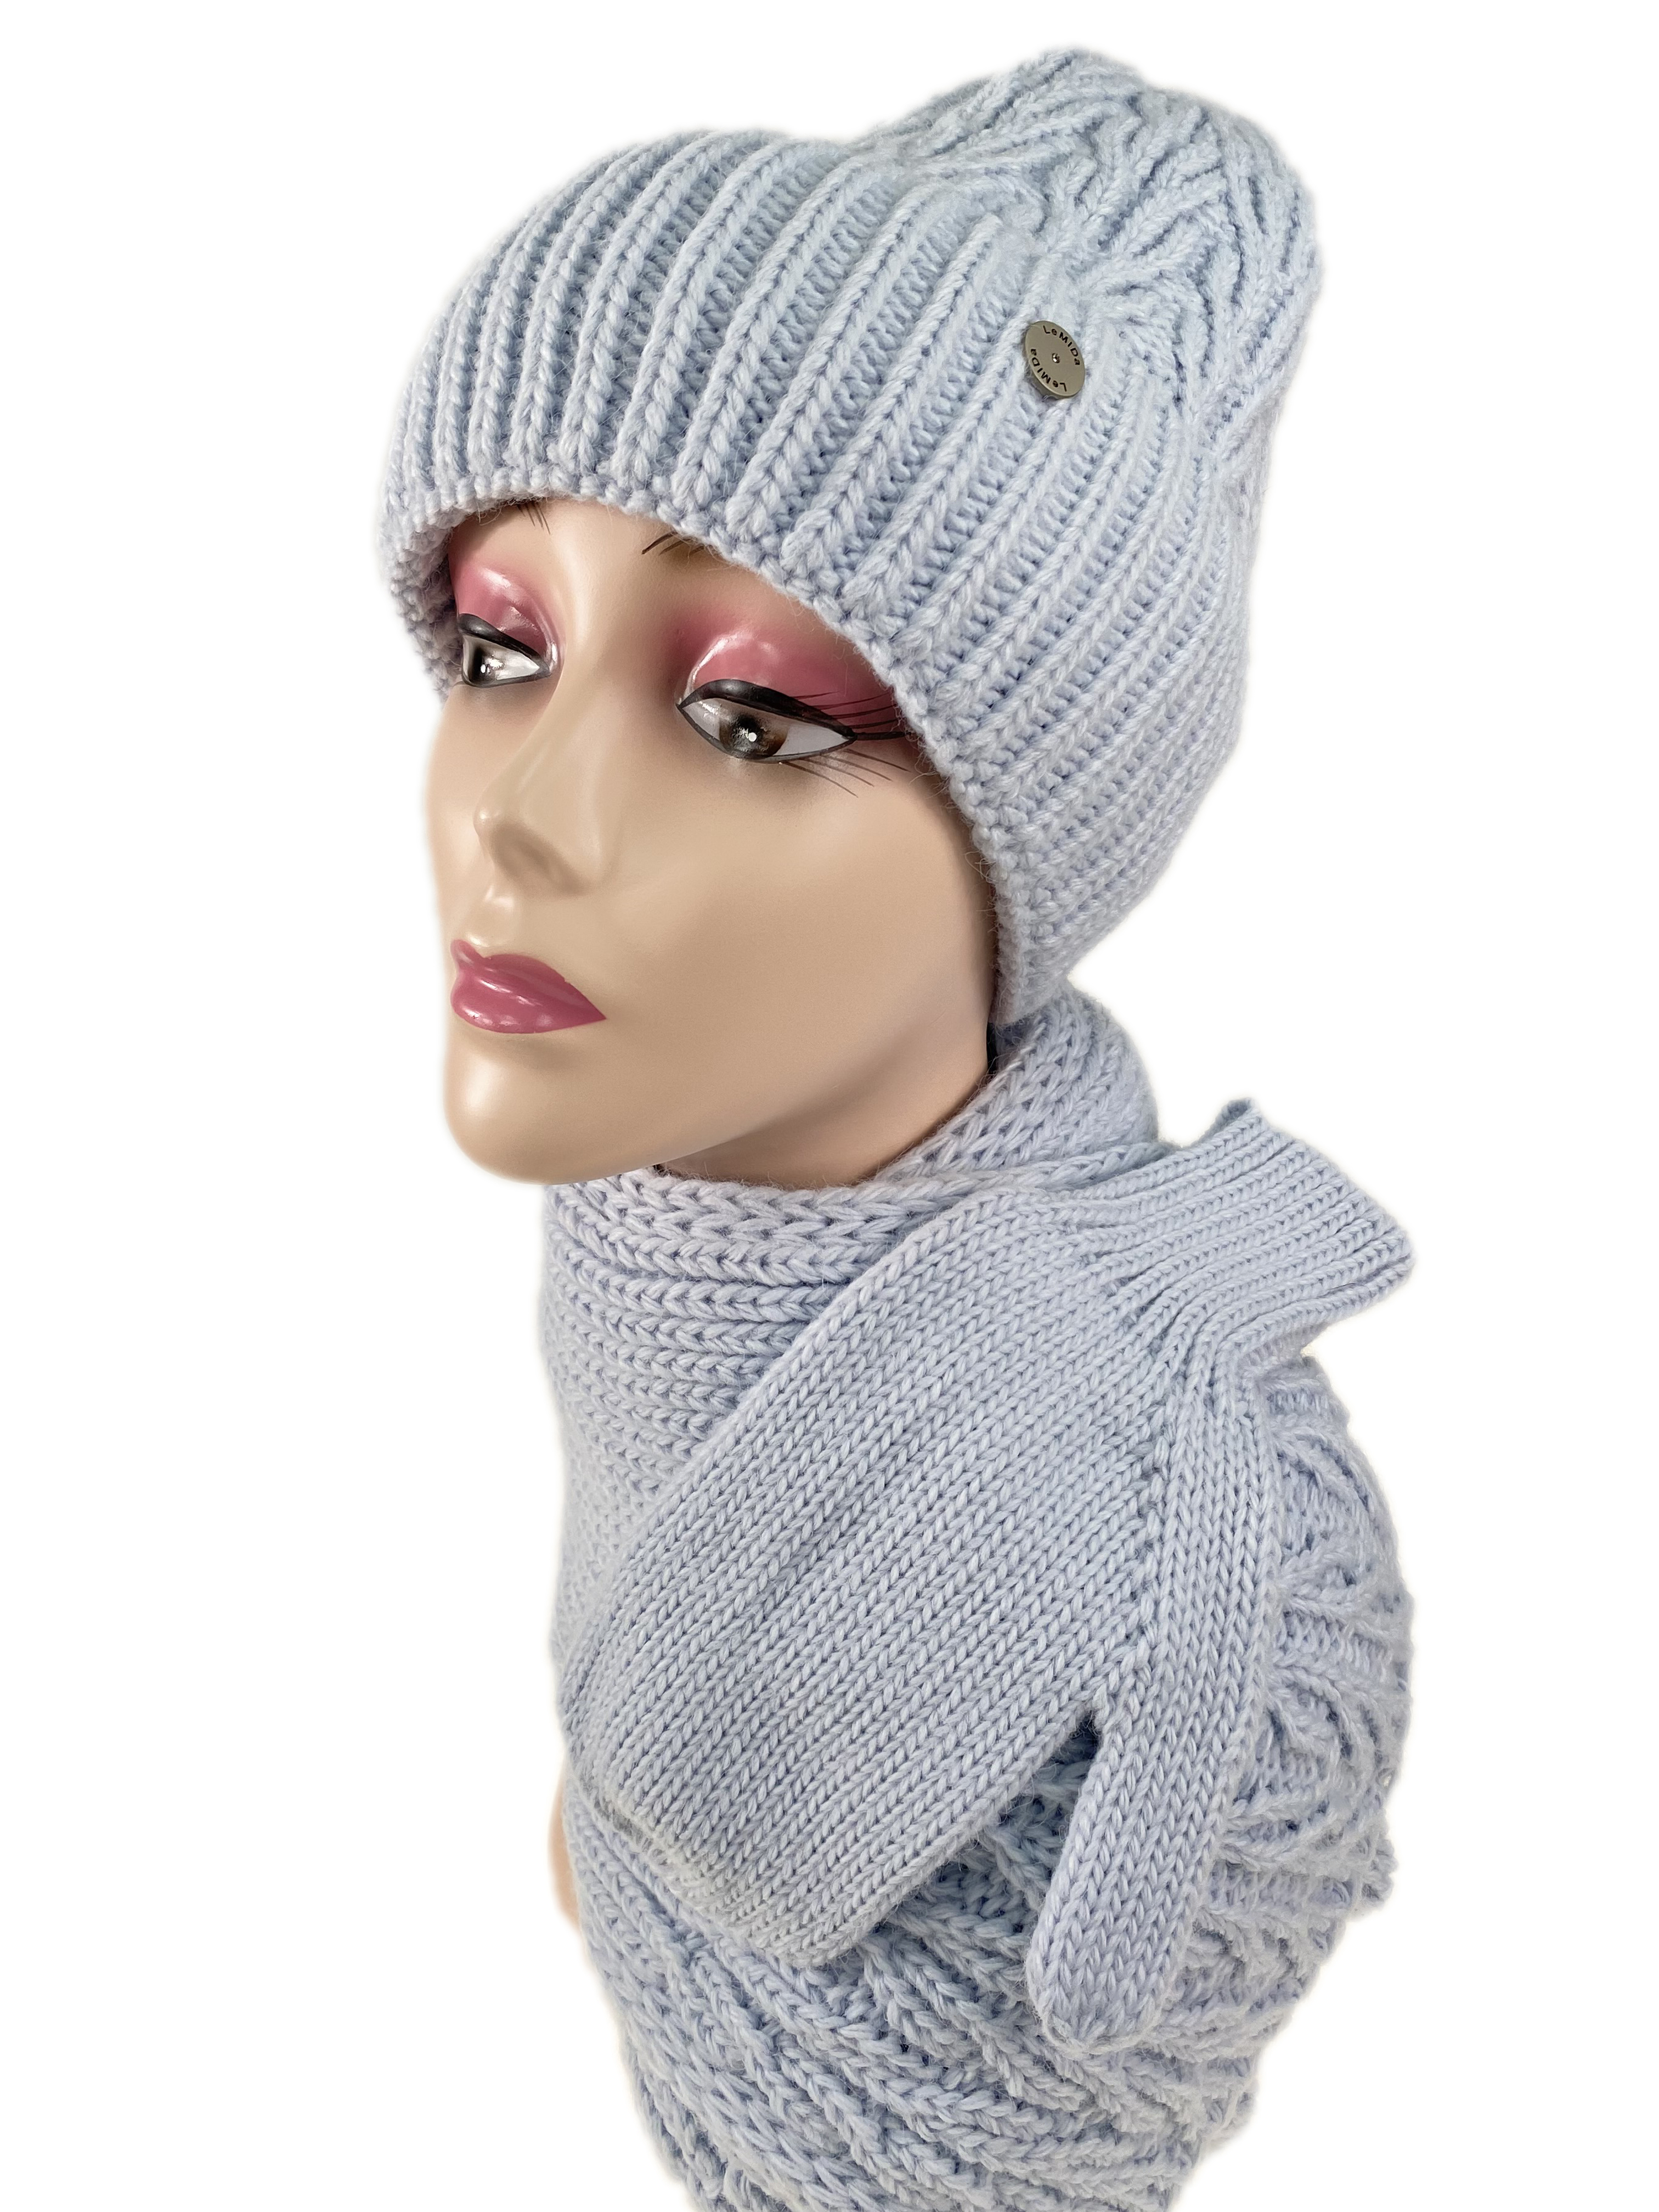 Комплект шапка женская, шарф и варежки, цвет голубой